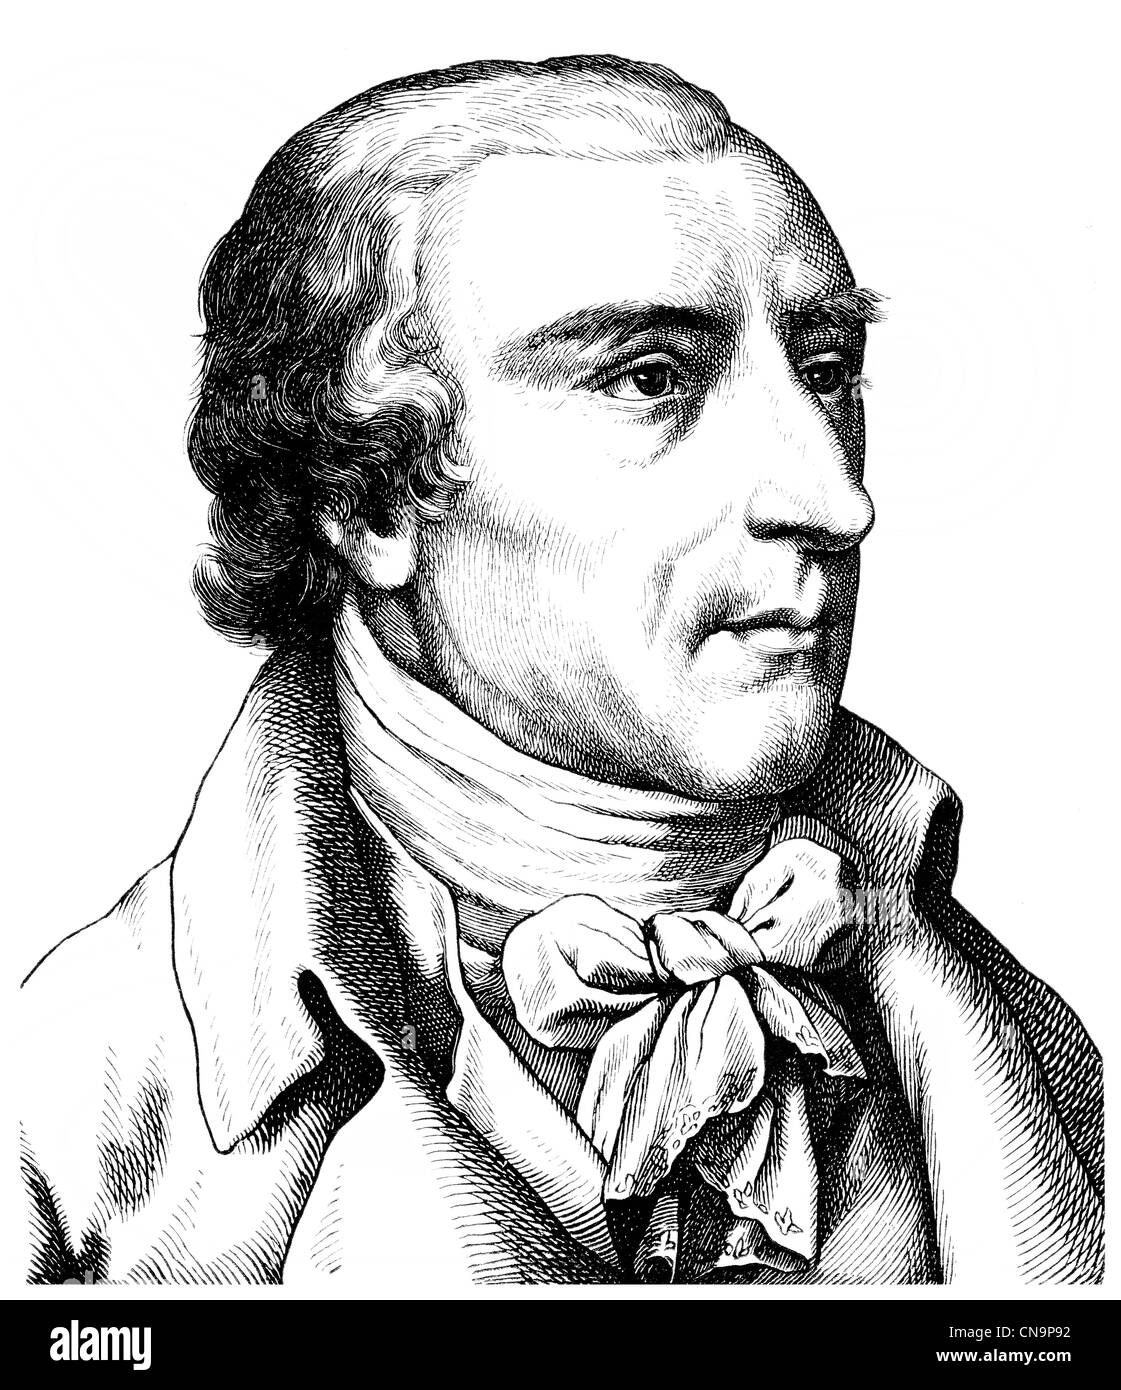 Historische Zeichnung, Joachim Heinrich Campe, 1746-1818, ein deutscher Schriftsteller der Aufklärung, Linguist, Pädagoge und Verleger Stockfoto